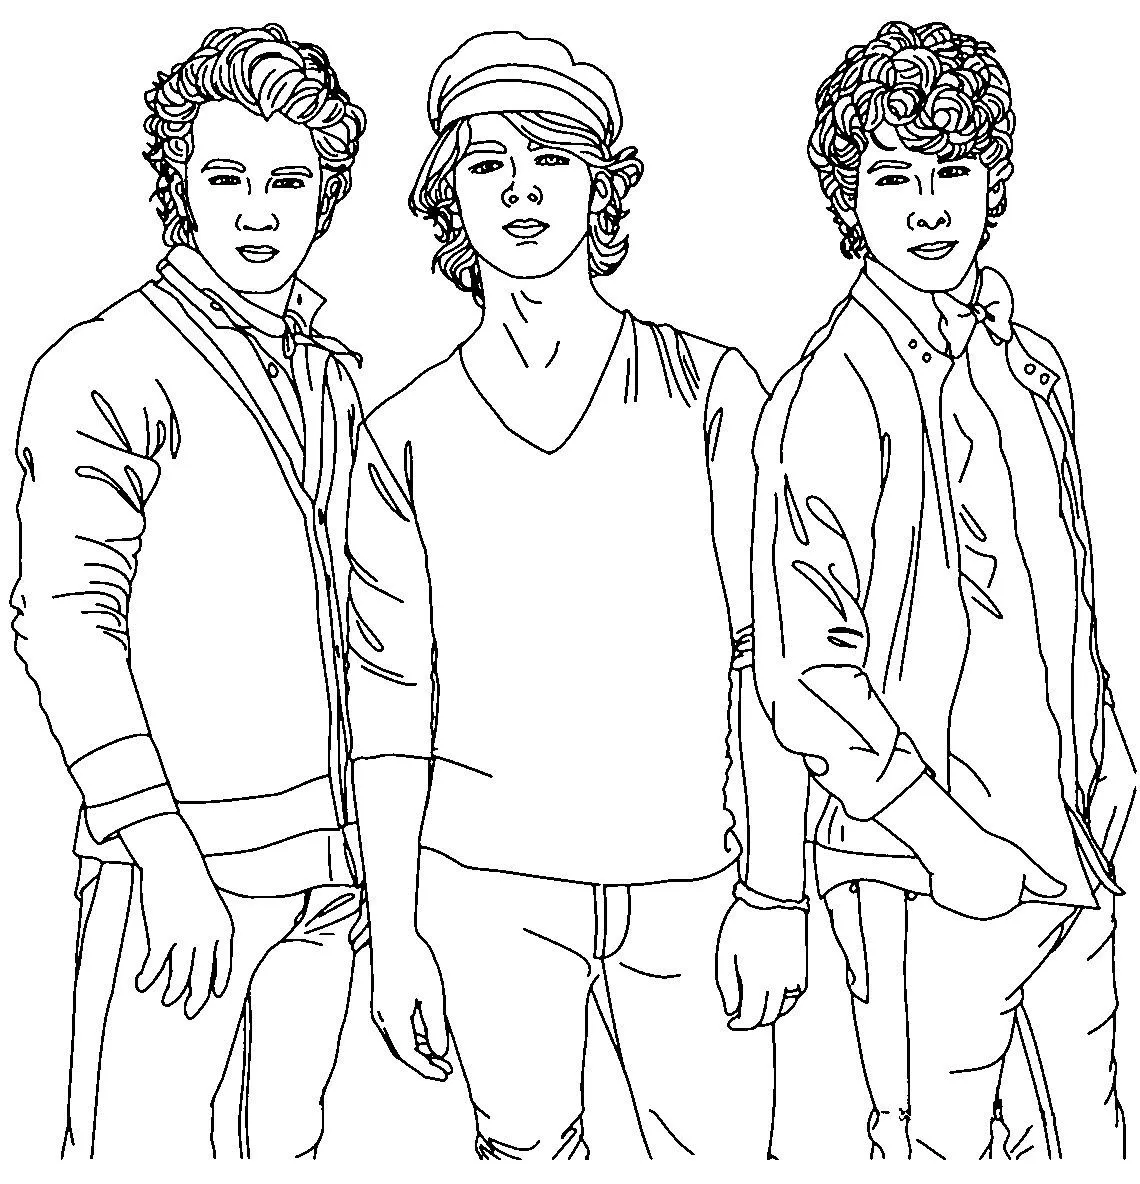 desicutijonas: Dibujos para colorear de Jonas brothers